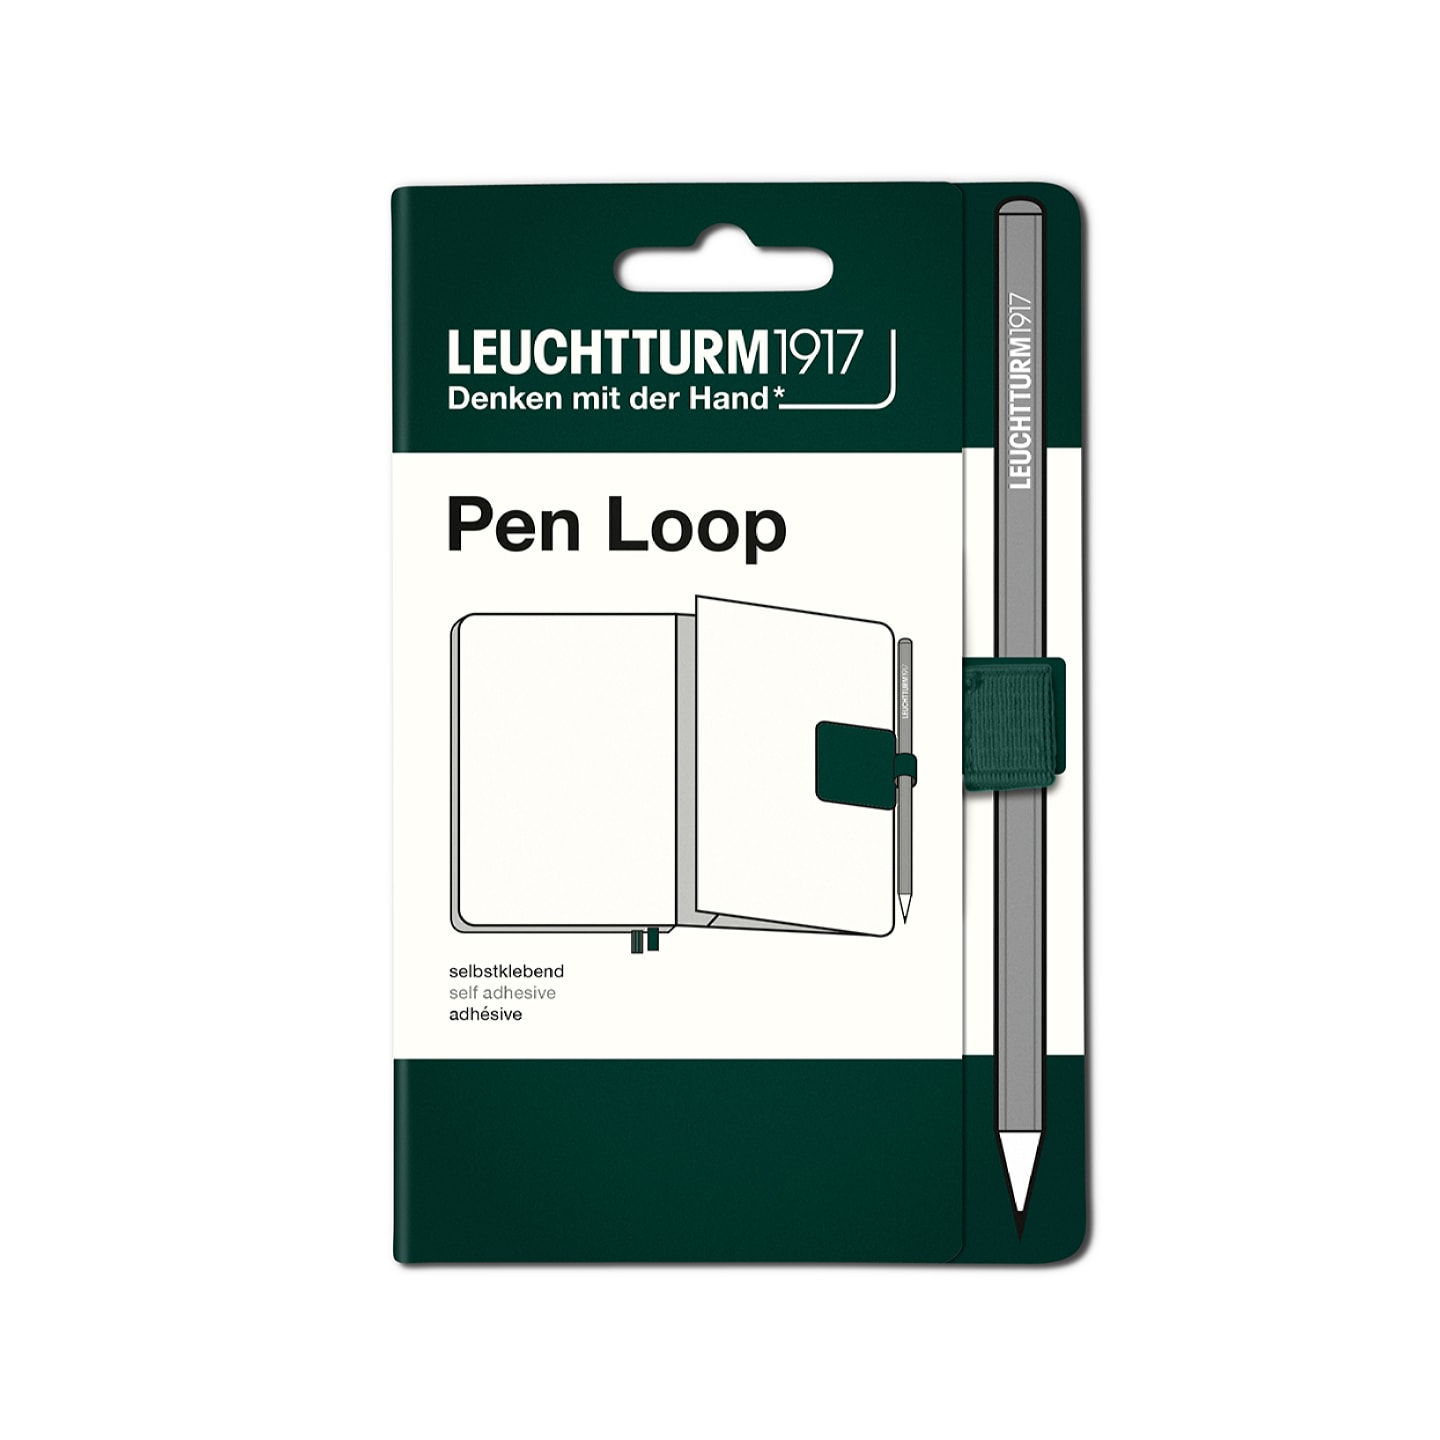 Петля самоклеящаяся Pen Loop для ручек на блокноты Leuchtturm1917 цвет Зеленый лес